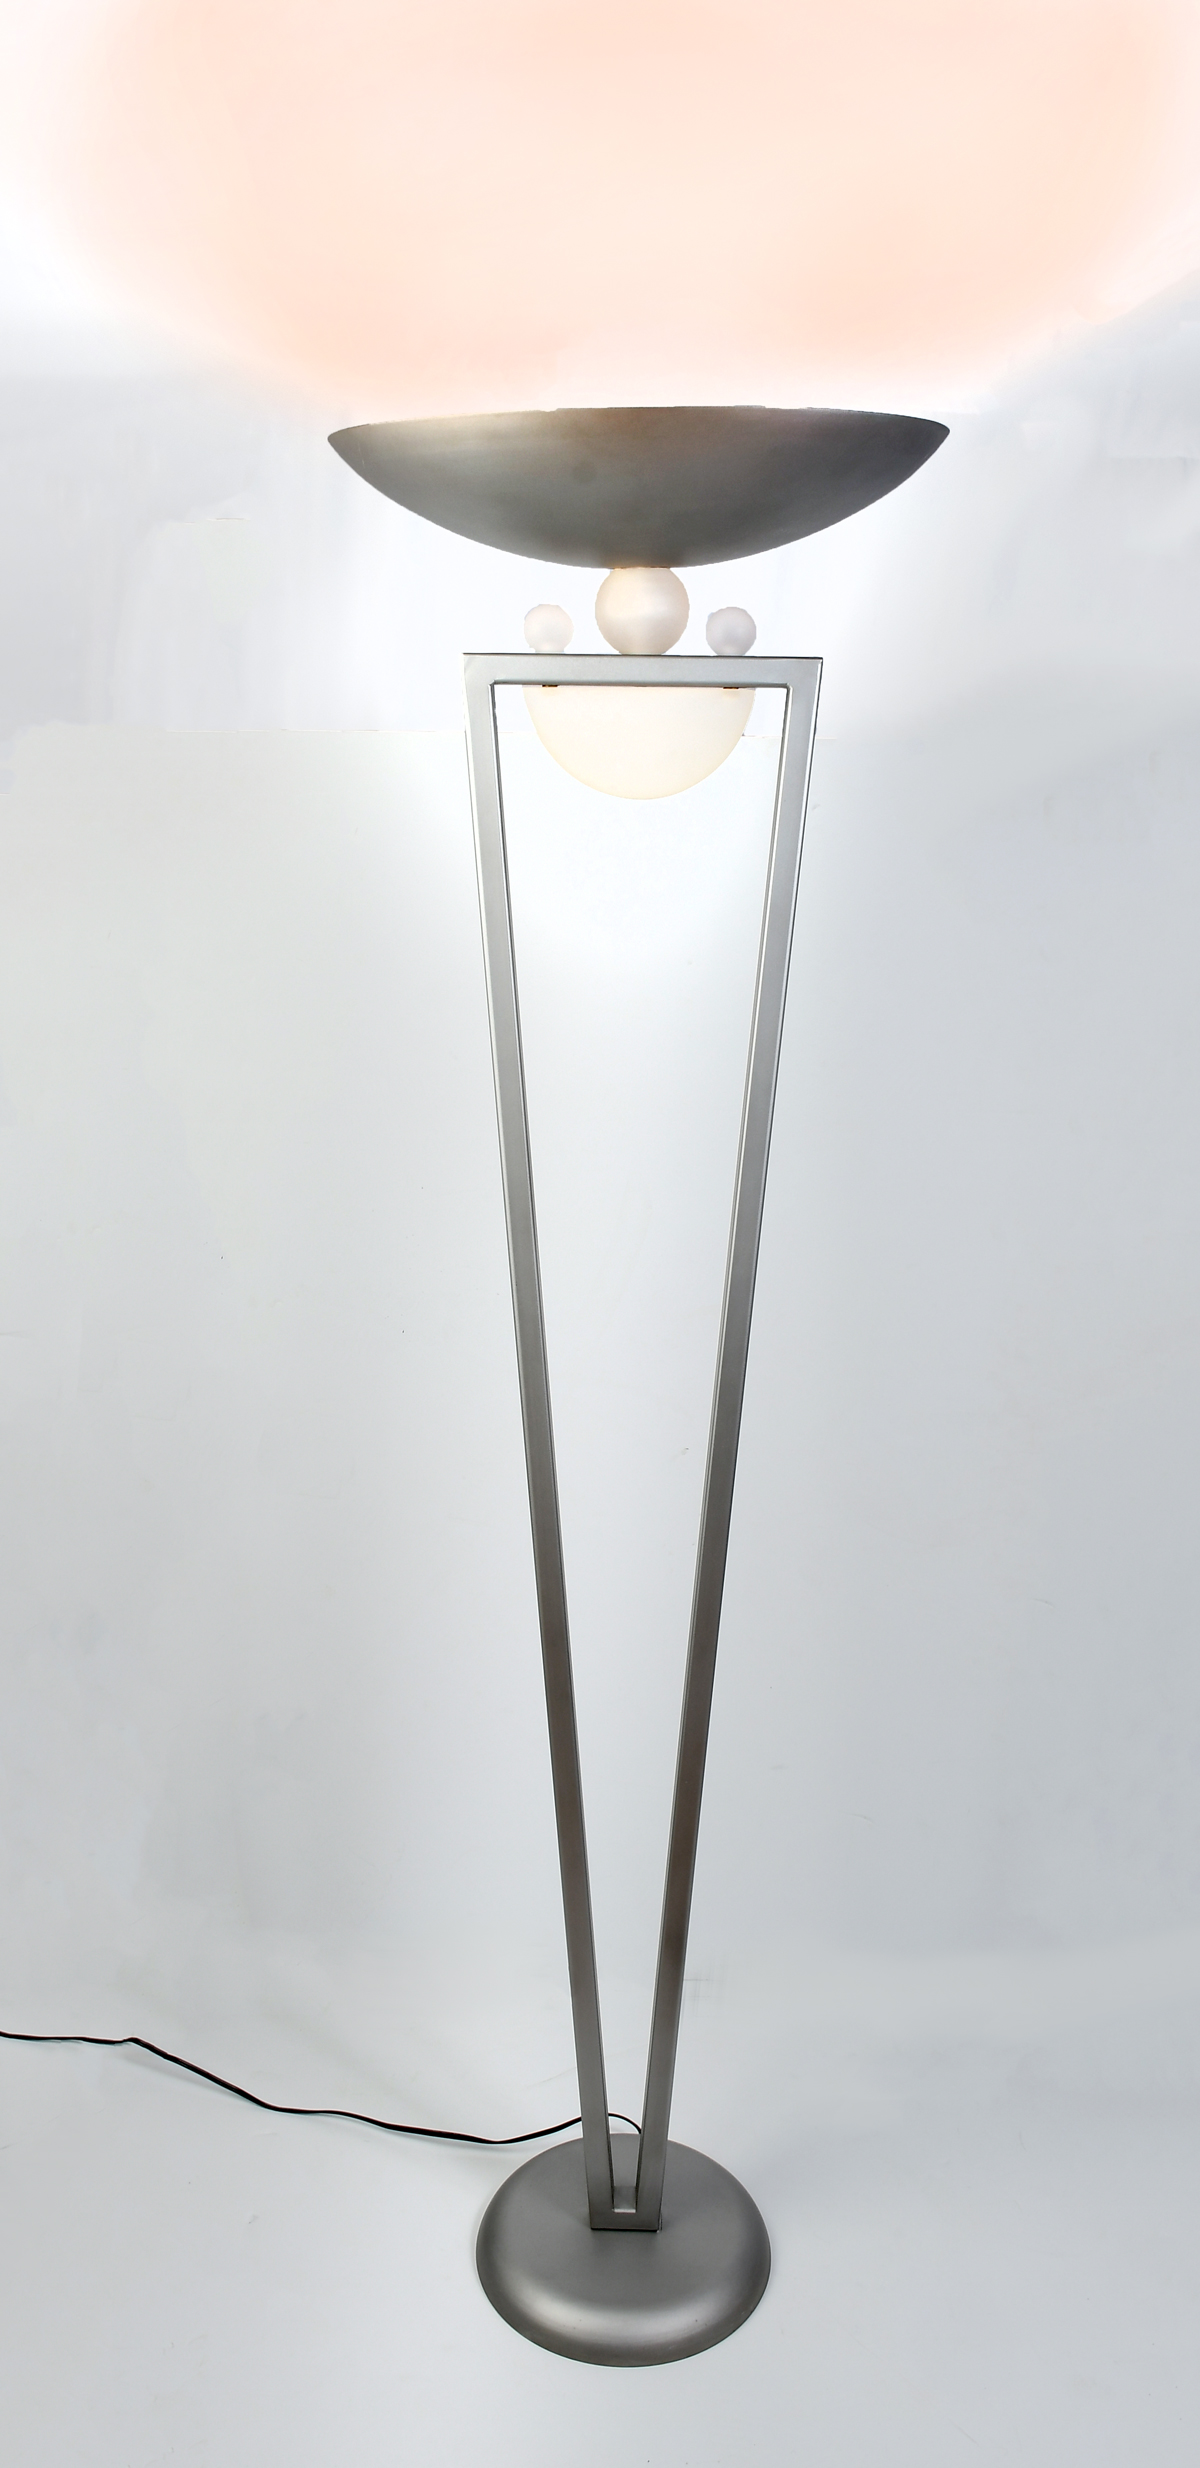 CONTEMPORARY FLOOR LAMP Grey metal  36b76a